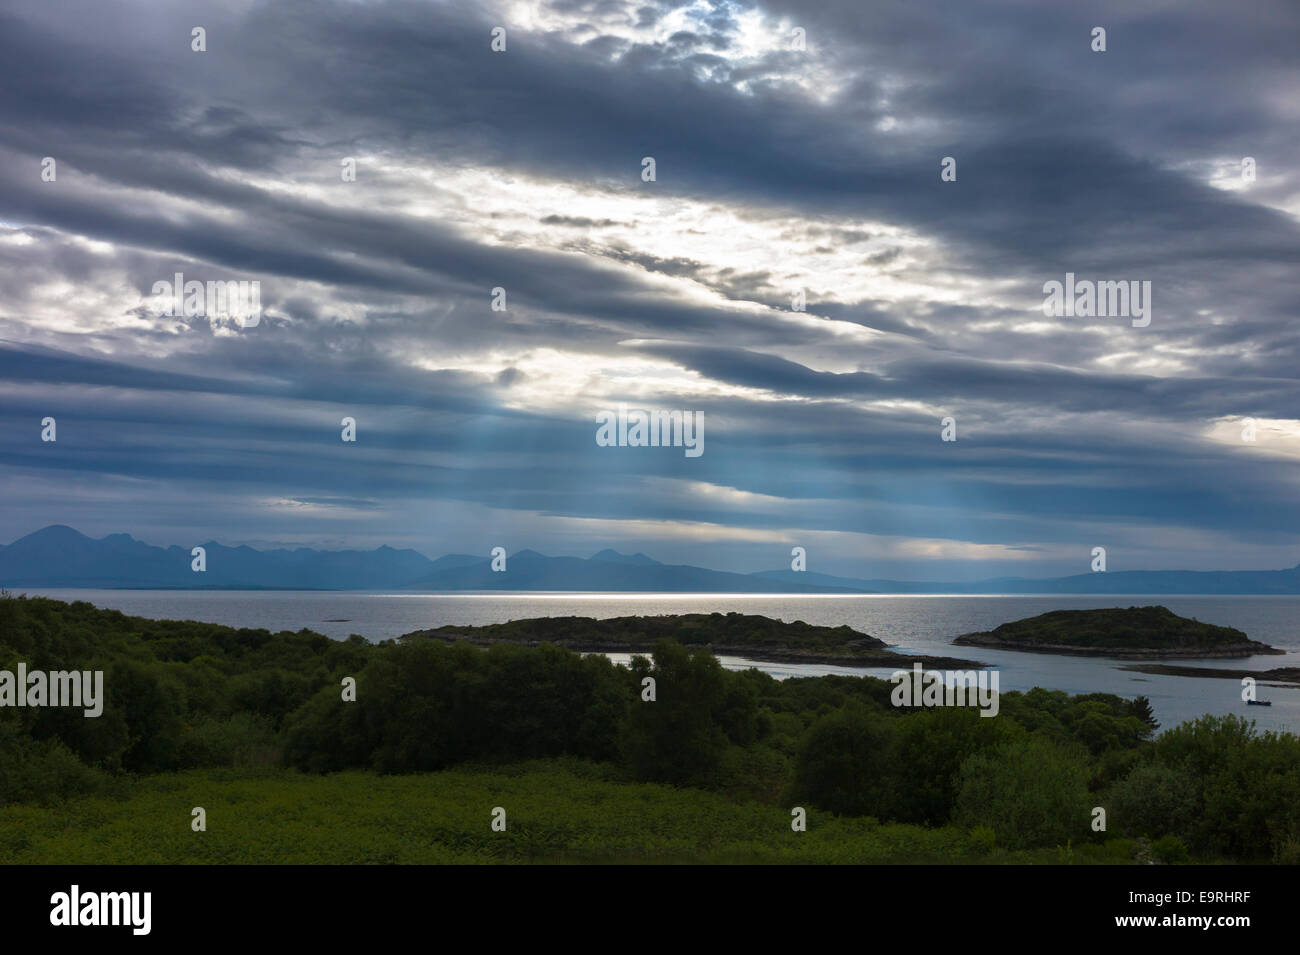 Les rayons du soleil percent nuage dans skyscene avec vue sur l'île de Skye et montagnes Cuillin de Kyle of Lochalsh sur le nord-ouest de COA Banque D'Images